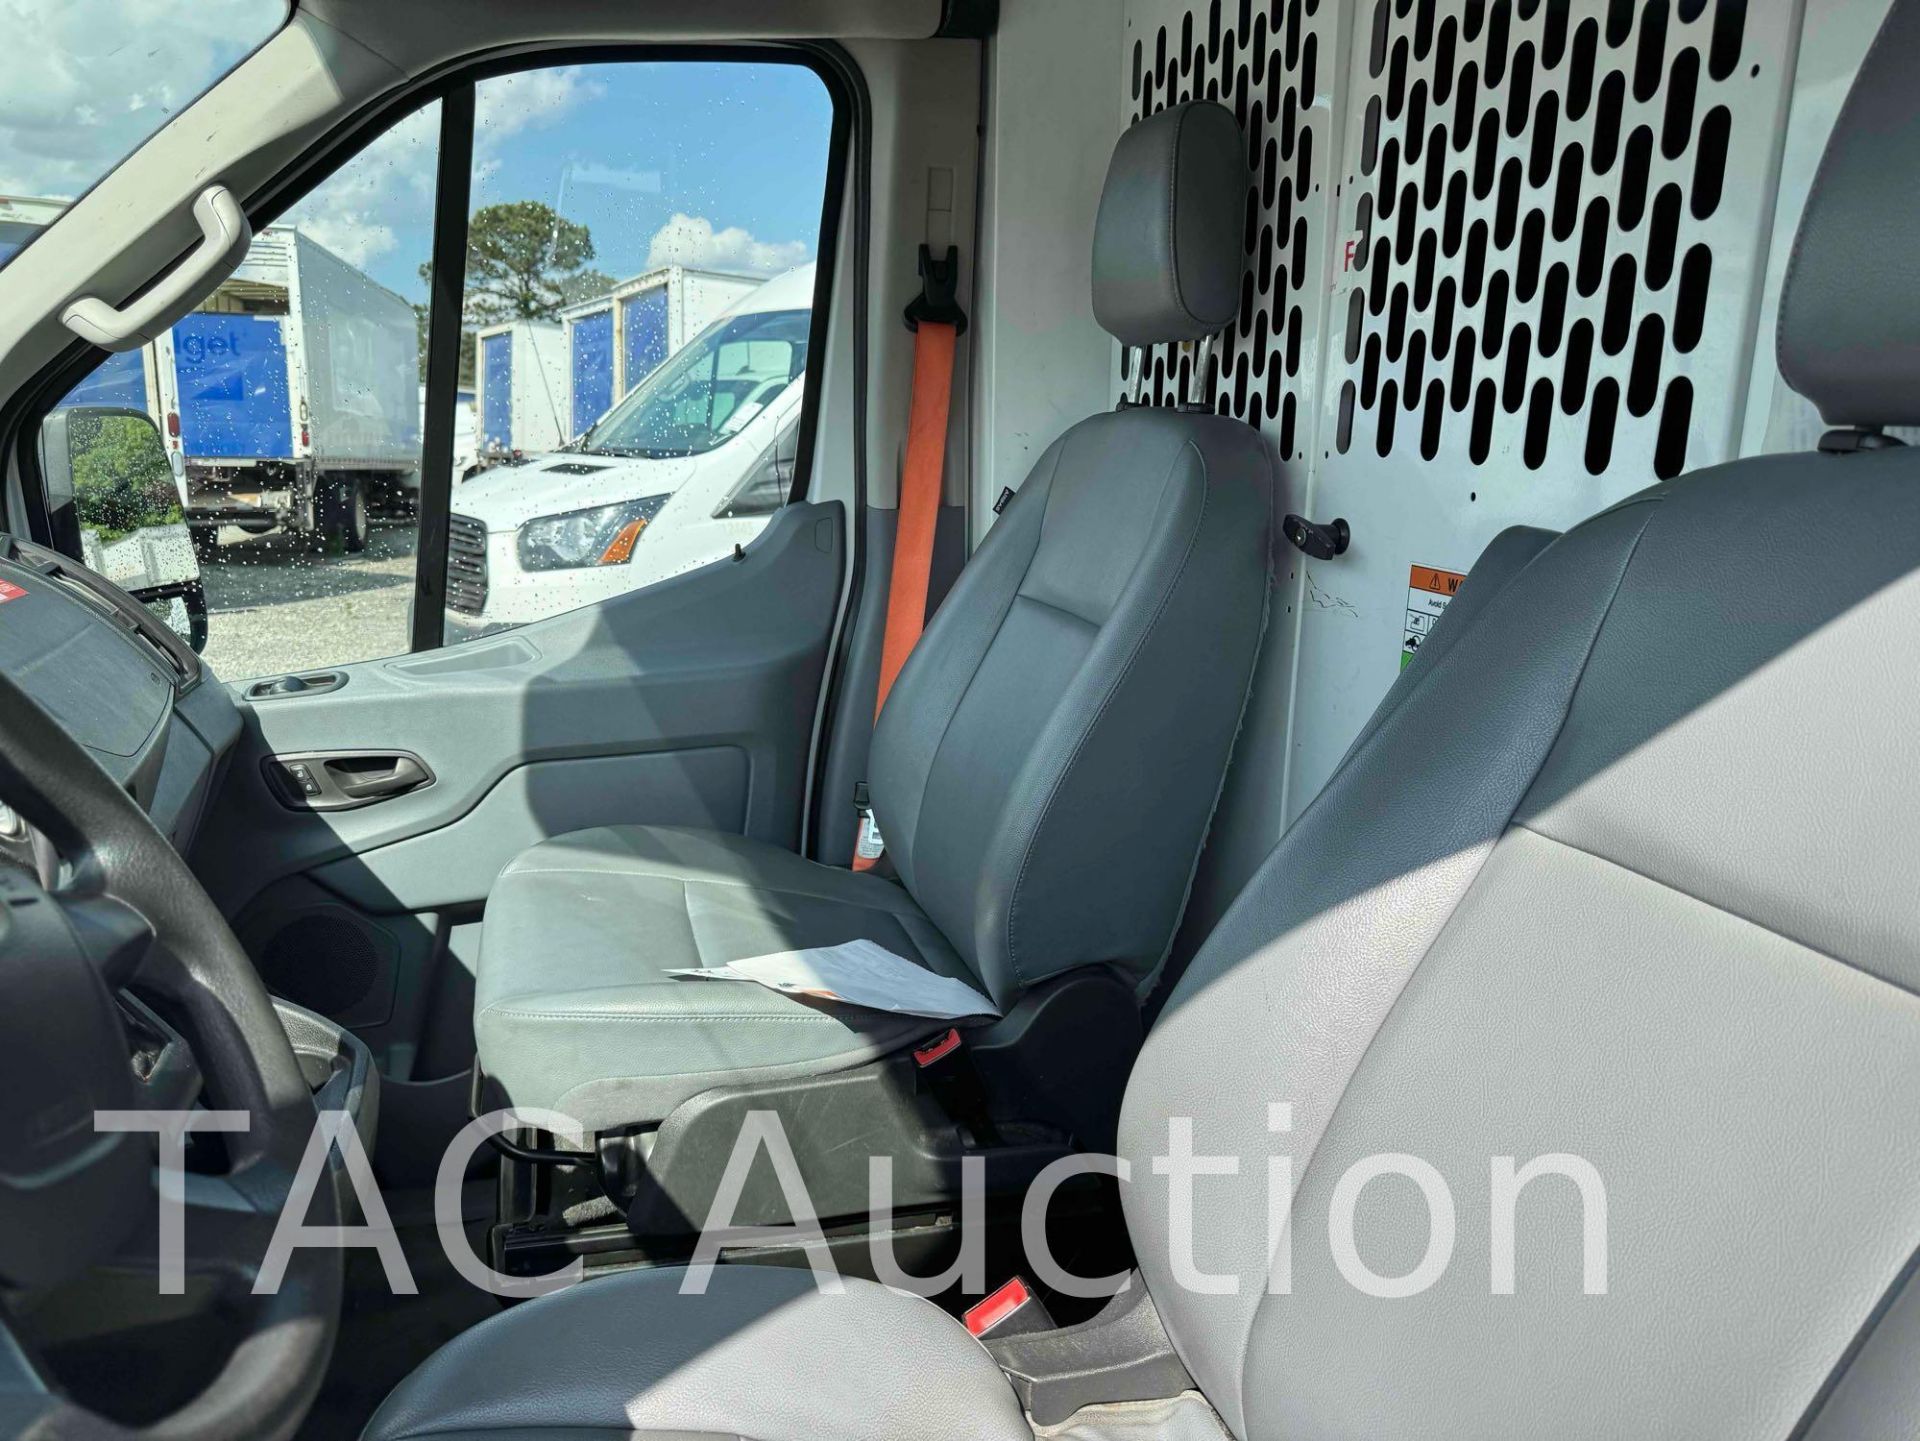 2019 Ford Transit 150 Cargo Van - Image 10 of 42